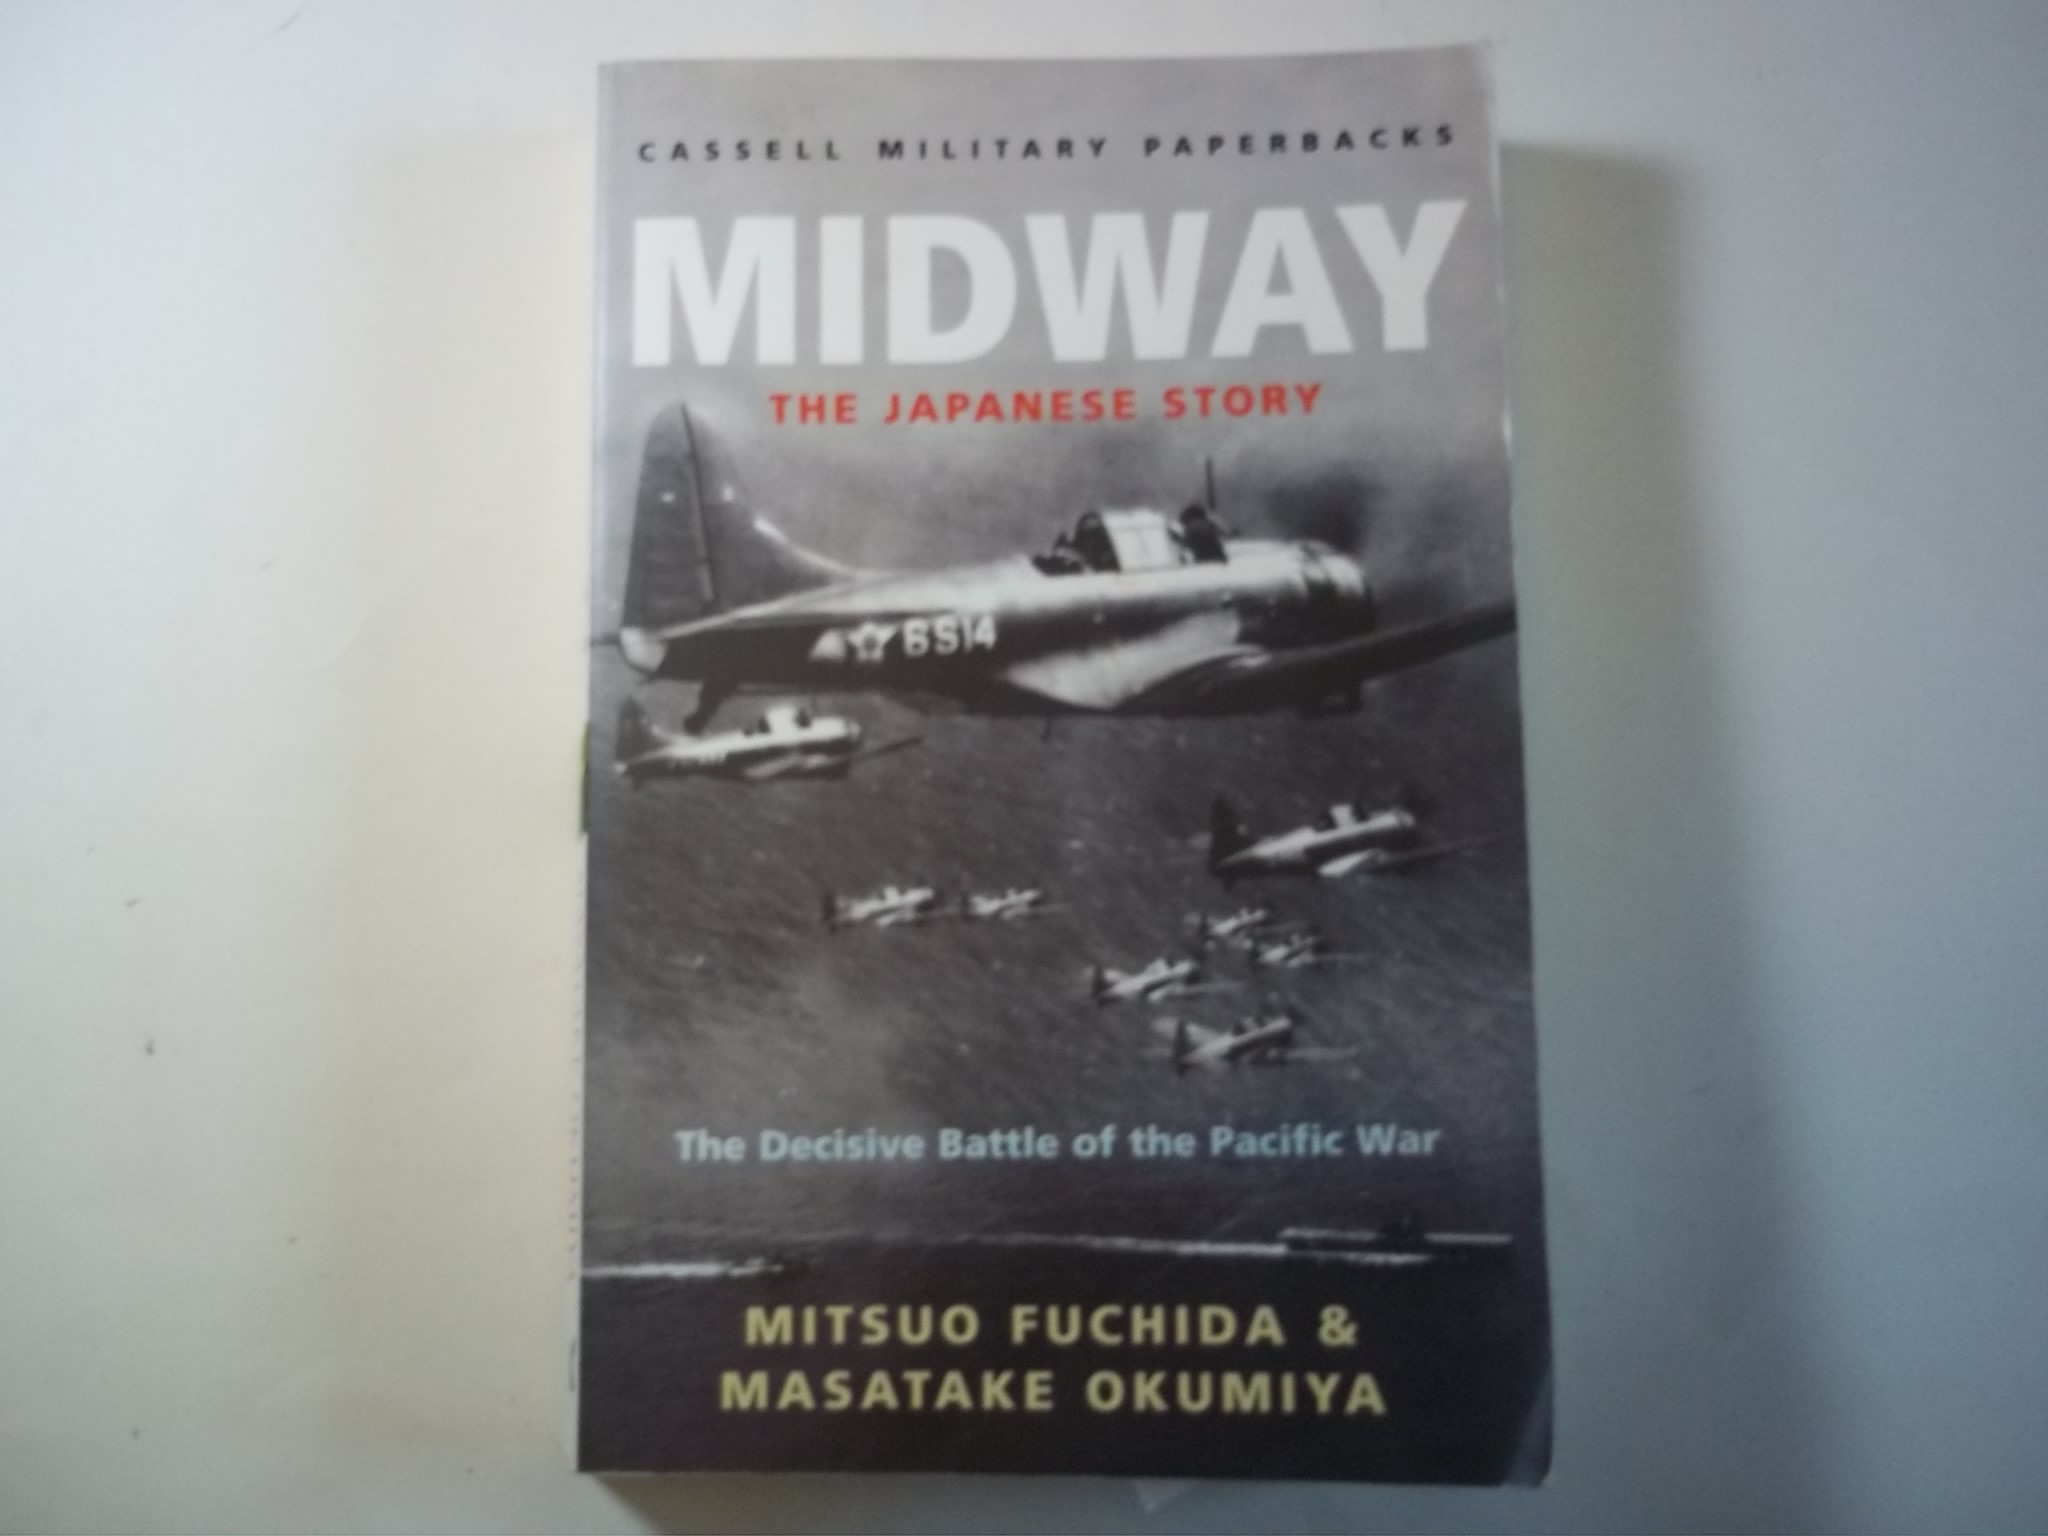 Midway: The Japanese Story (Cassell Military Paperbacks) - Fuchida, Mitsuo; Okumiya, Masatake